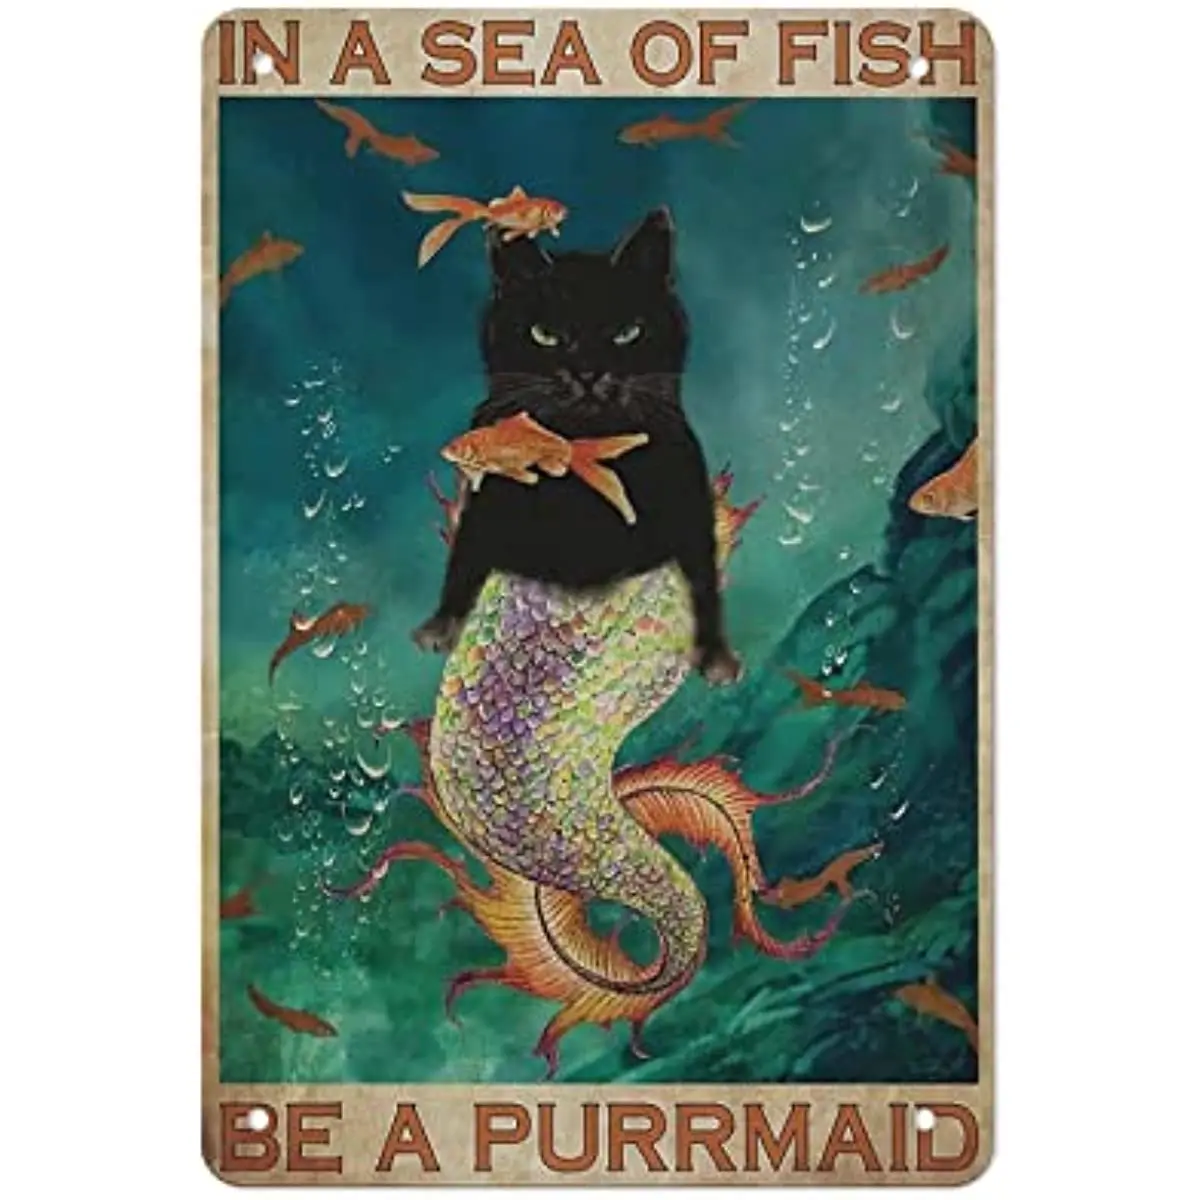 

Металлический постер с изображением черной кошки, Русалка, металлические жестяные знаки в море рыбы, будьте горничной, дома, кухни, бара, кафе, фотоподарки